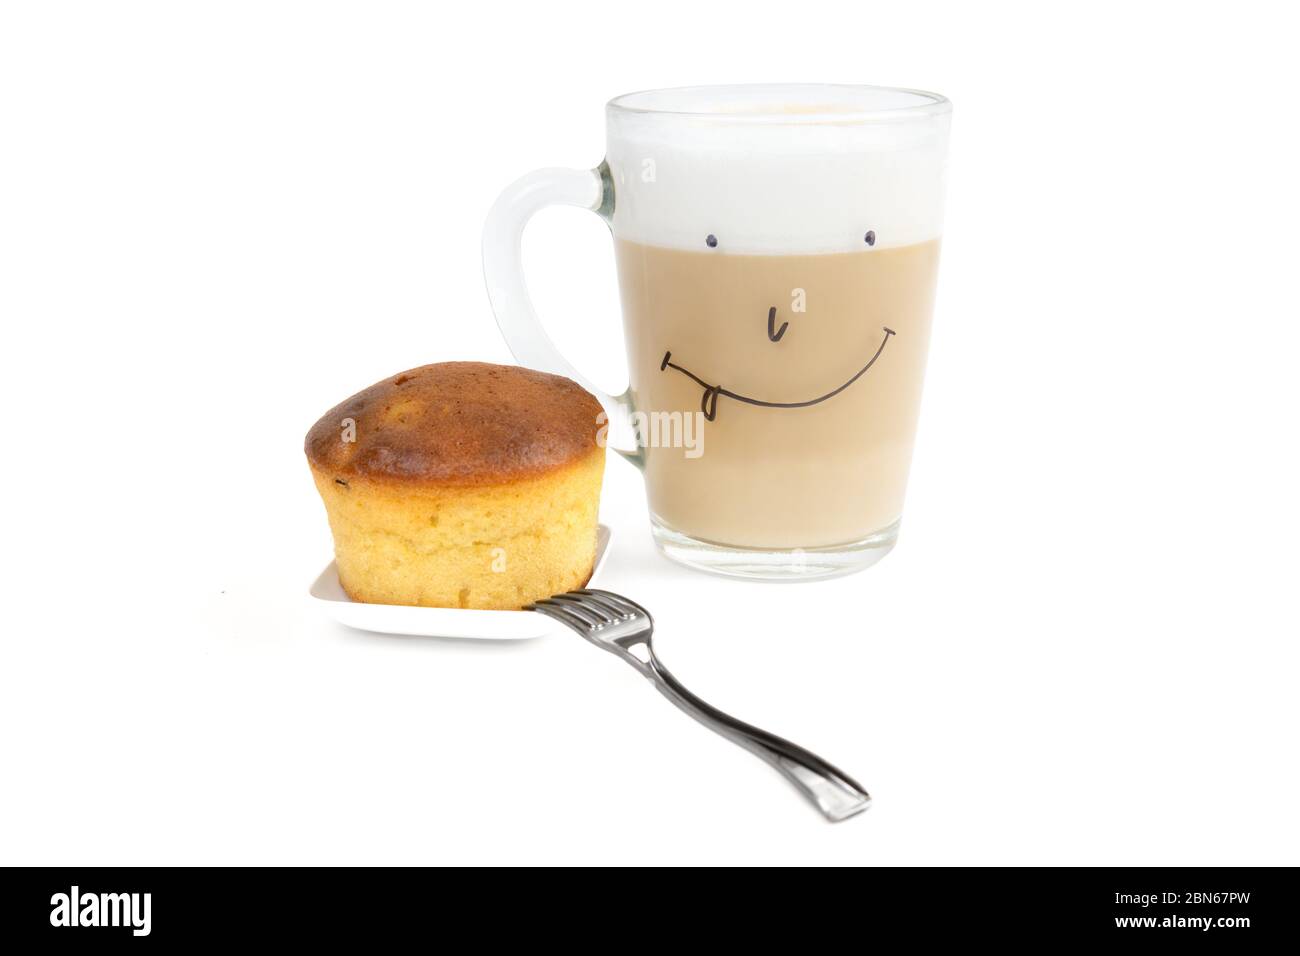 Cappuccino café avec mousse de lait riche dans une tasse en verre avec un visage drôle dessiné à la main, un cupcake maison et une petite fourchette isolée sur fond blanc. Banque D'Images